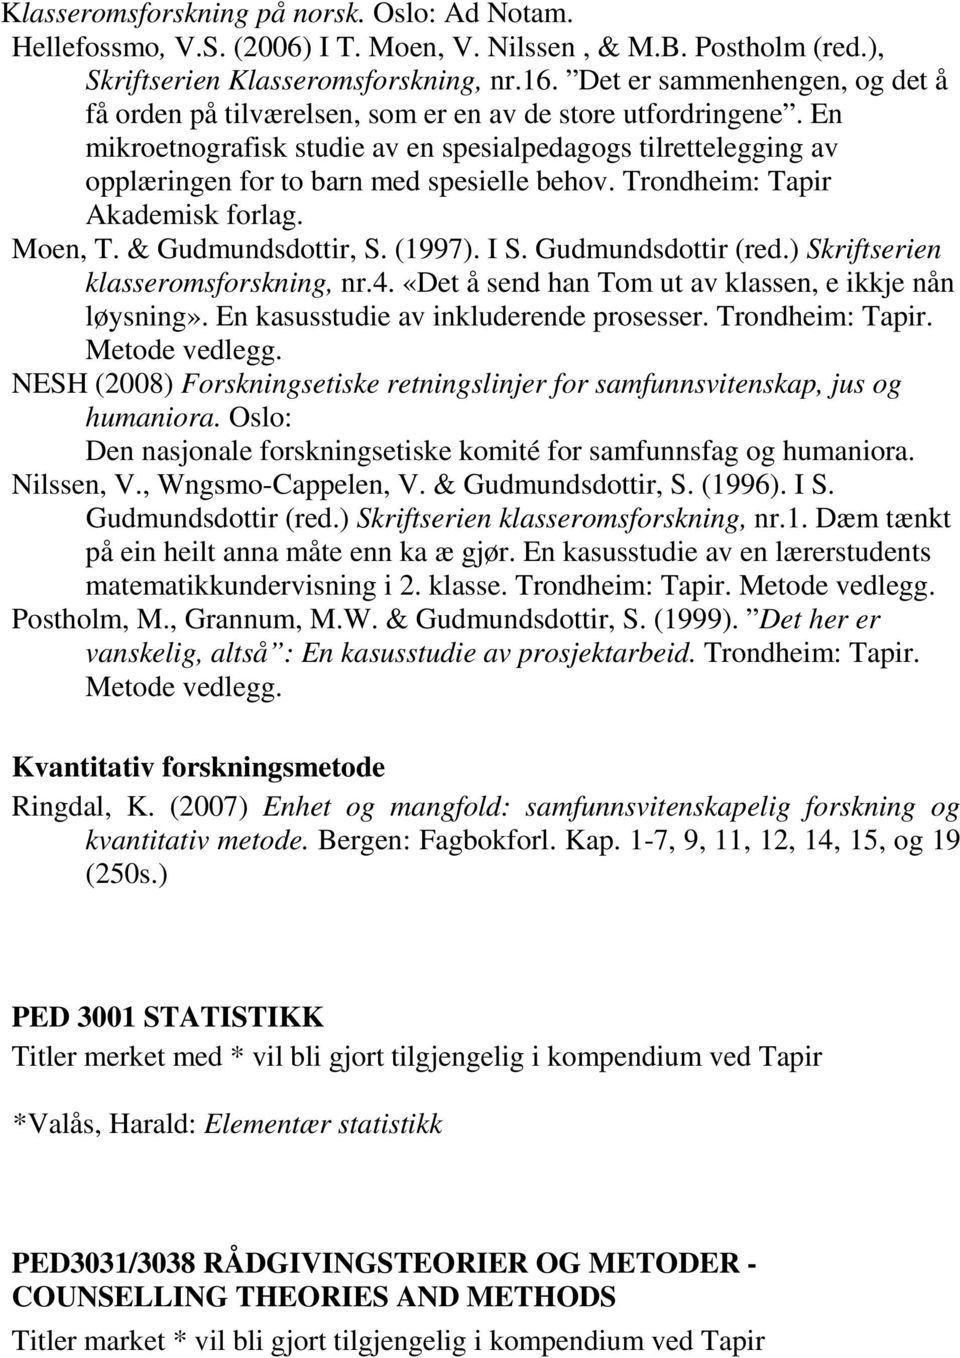 En mikroetnografisk studie av en spesialpedagogs tilrettelegging av opplæringen for to barn med spesielle behov. Trondheim: Tapir Akademisk forlag. Moen, T. & Gudmundsdottir, S. (1997). I S.